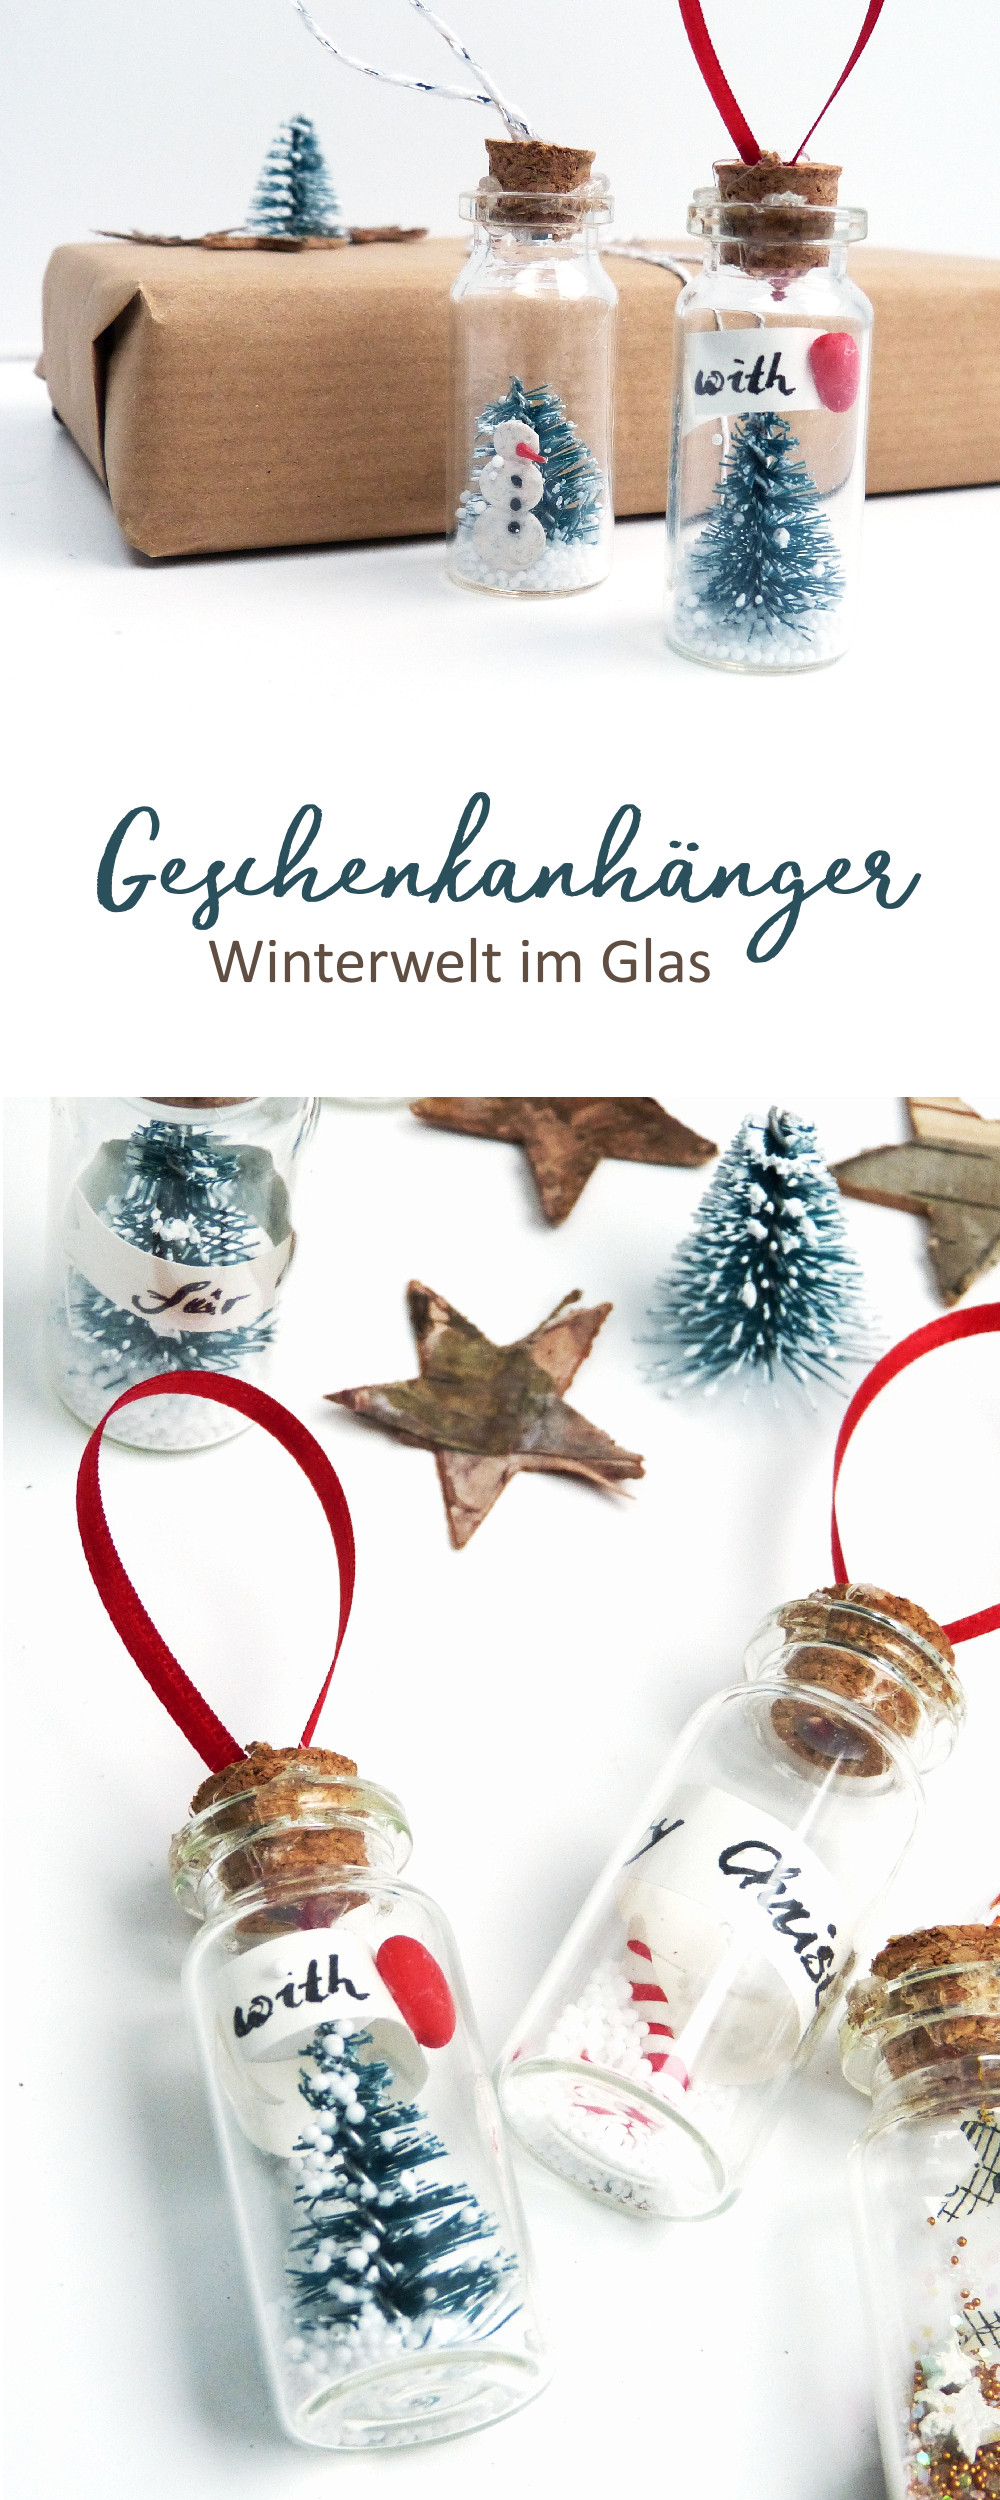 DIY Winterwelt im Glas. Mach deine eigenen Geschenkanhänger